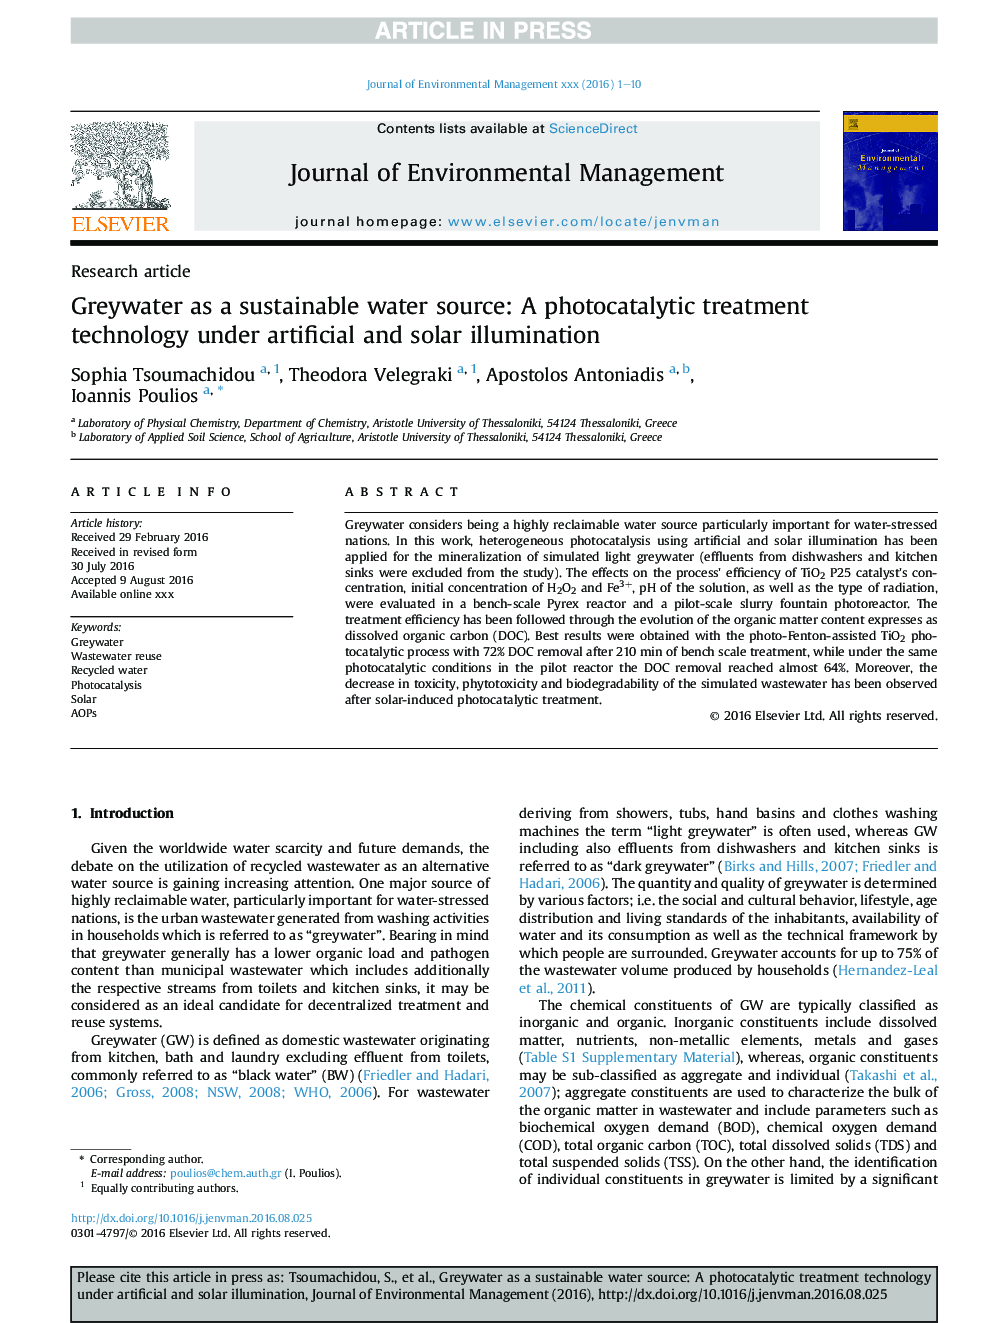 گریدواتر به عنوان یک منبع آب پایدار: تکنولوژی درمان فتوکاتالیتی تحت نور مصنوعی و خورشیدی 